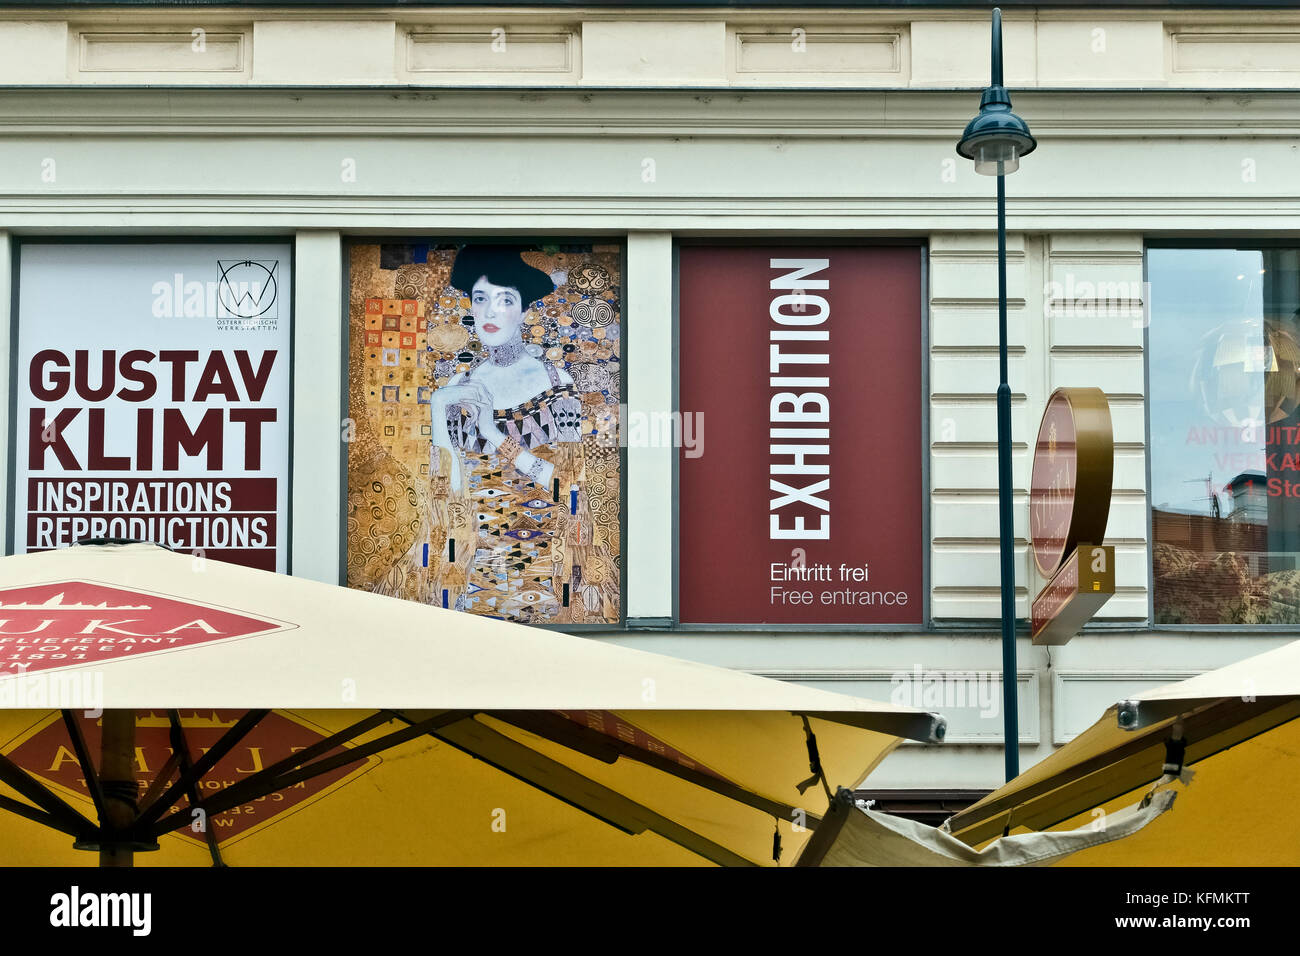 Souvenirladen, Shopping, Ausstellung von Gustav Klimt Reproduktionen in der Kärntner Str. Wien, Wien, Österreich, Europa, EU. Große Schirme im Vordergrund. Stockfoto